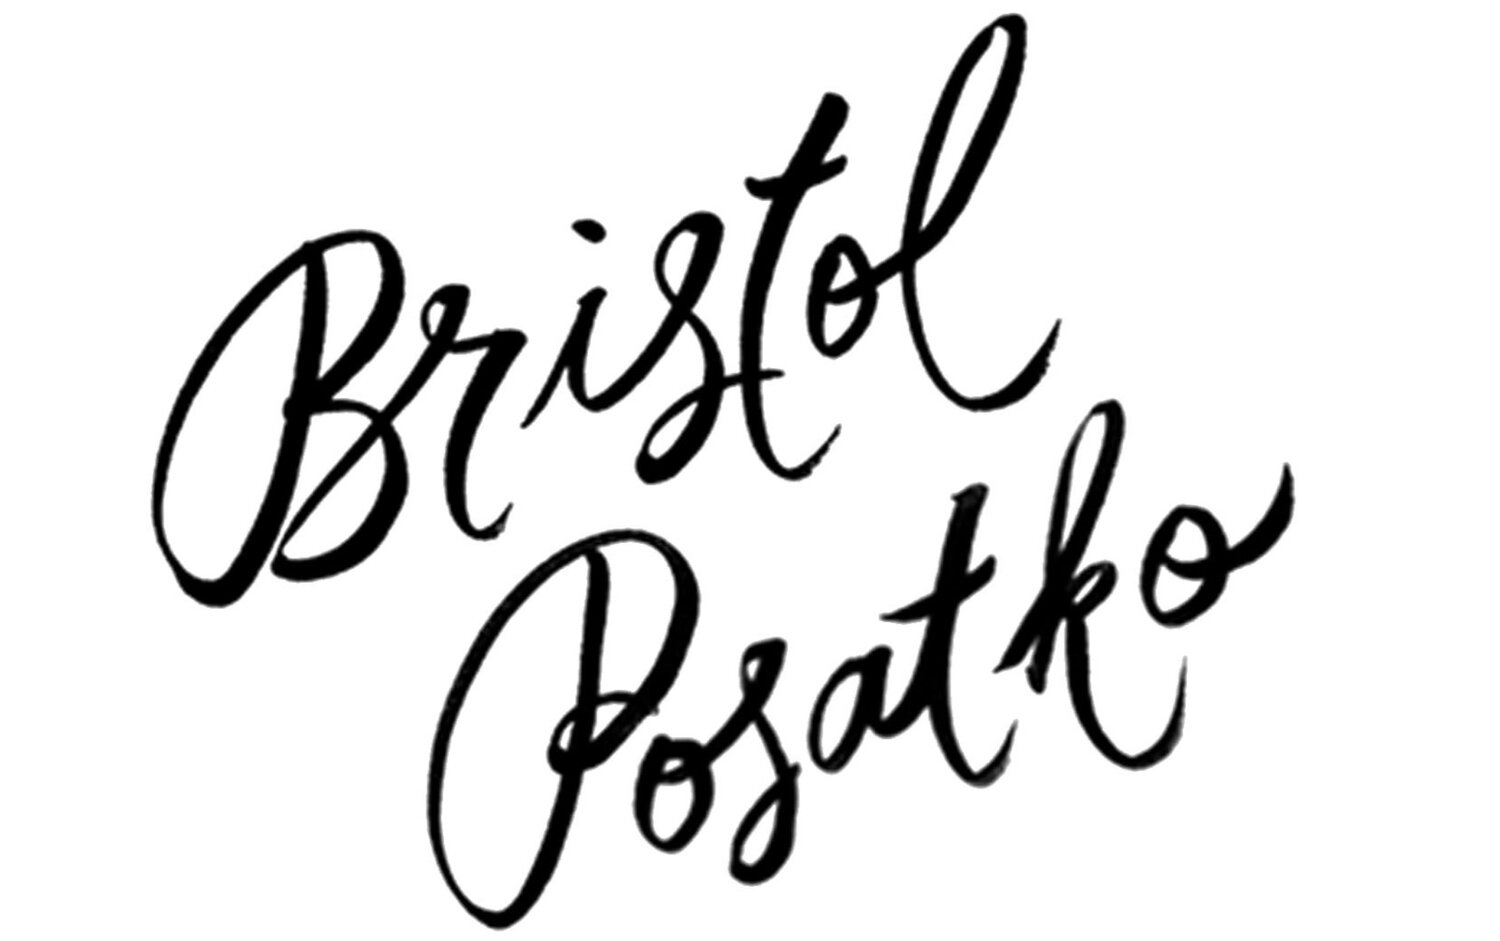 Bristol Posatko